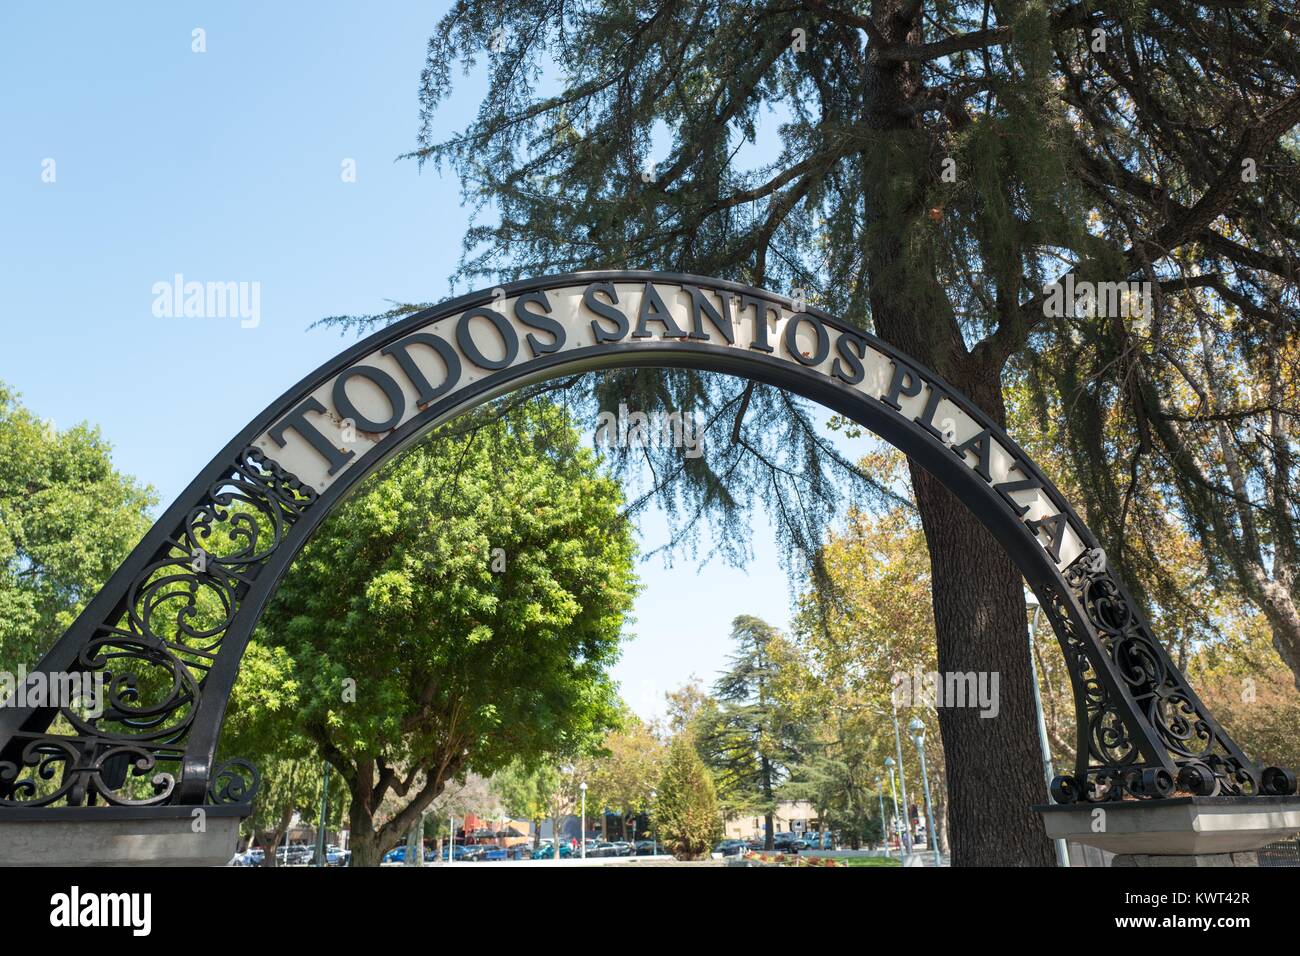 Señalización para Todos Santos Plaza, un parque público y el punto focal de la zona centro de la ciudad de Concord, California, 8 de septiembre de 2017. Foto de stock